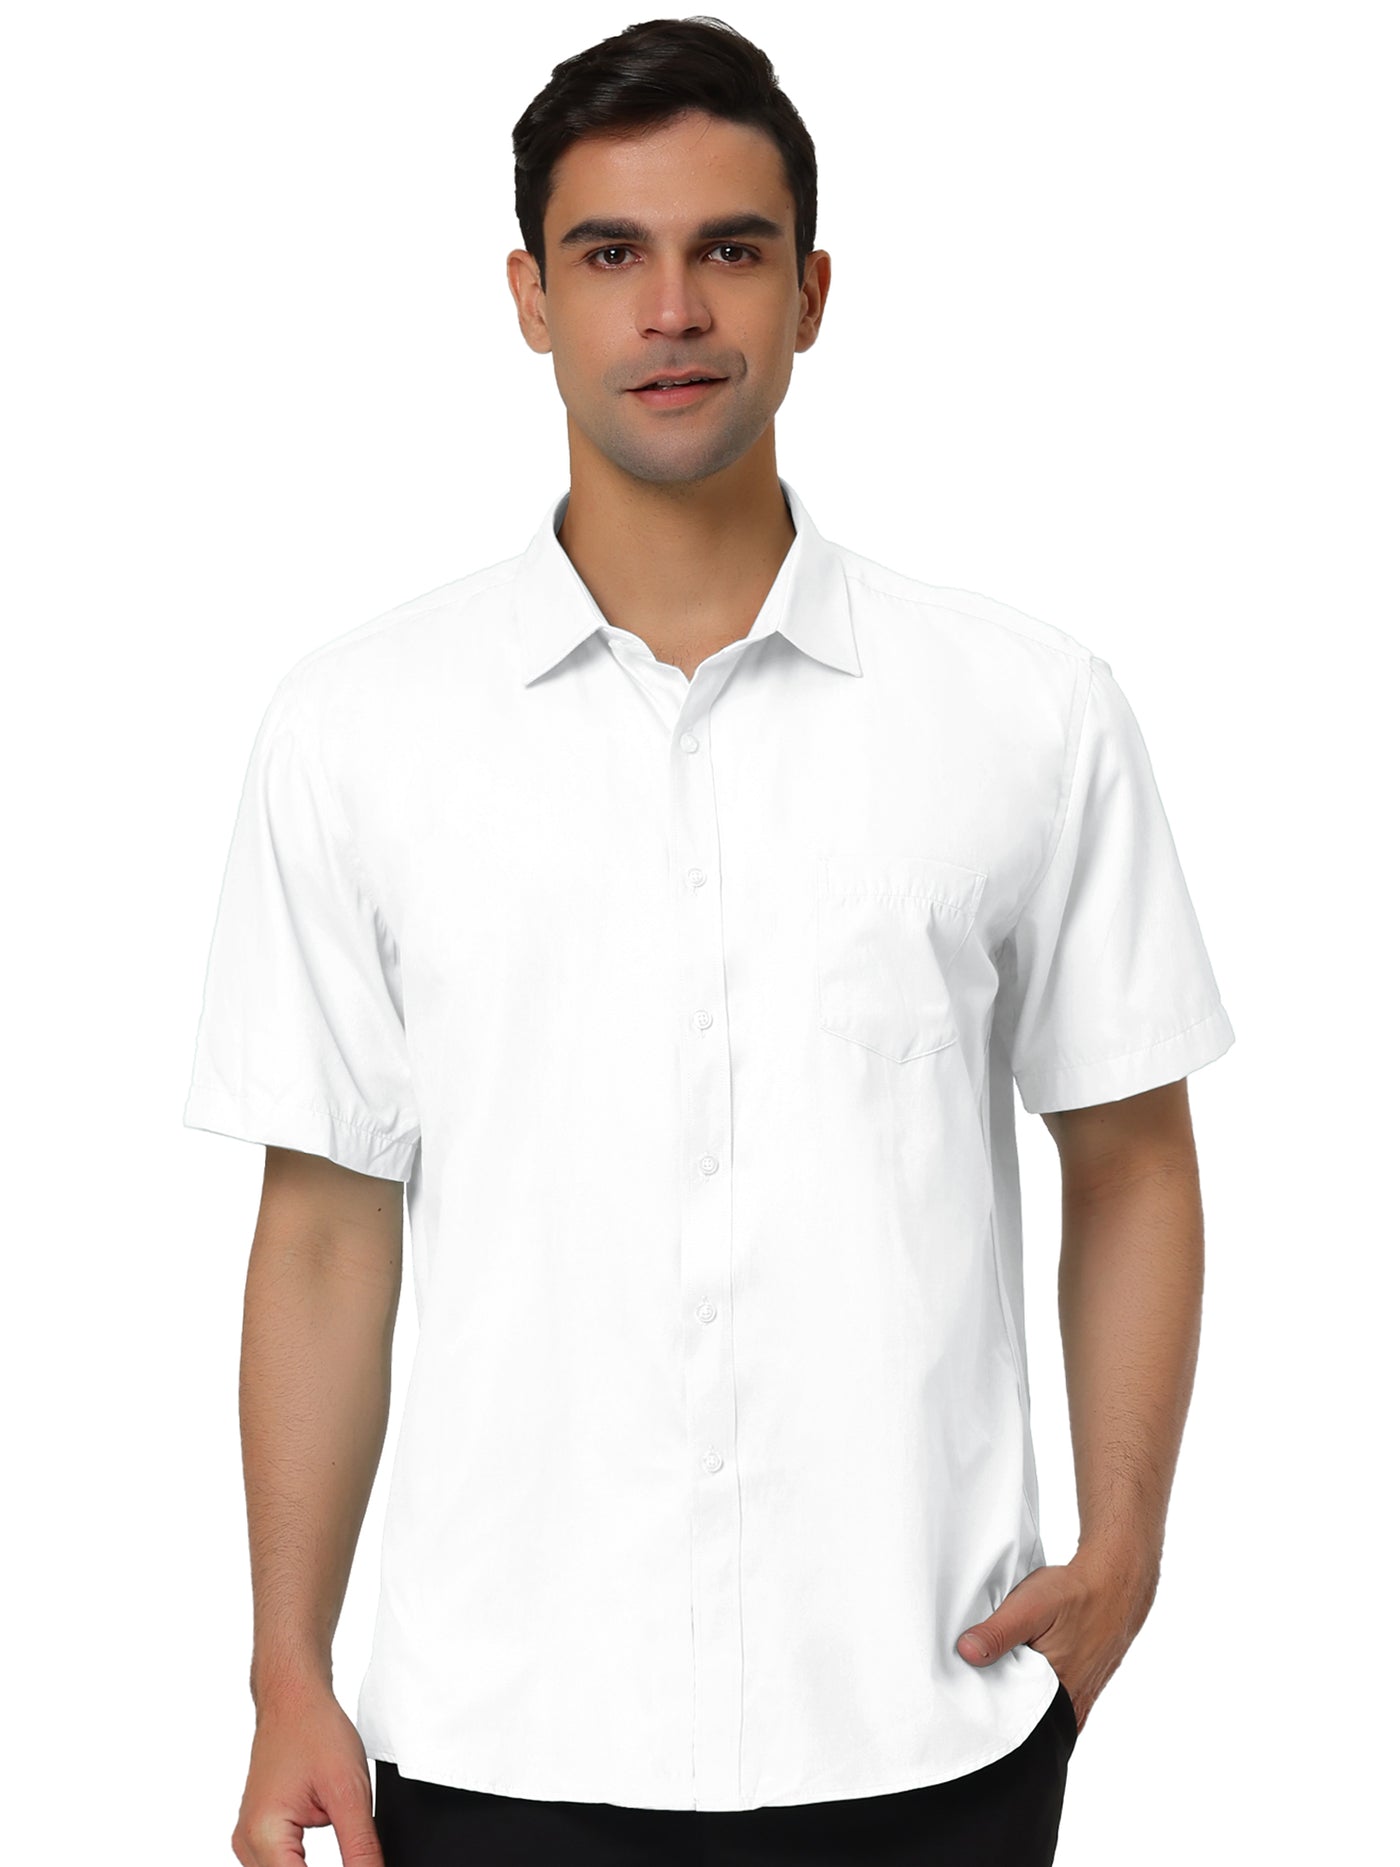 Bublédon Lapel Short Sleeve Button Business Solid Color Shirt